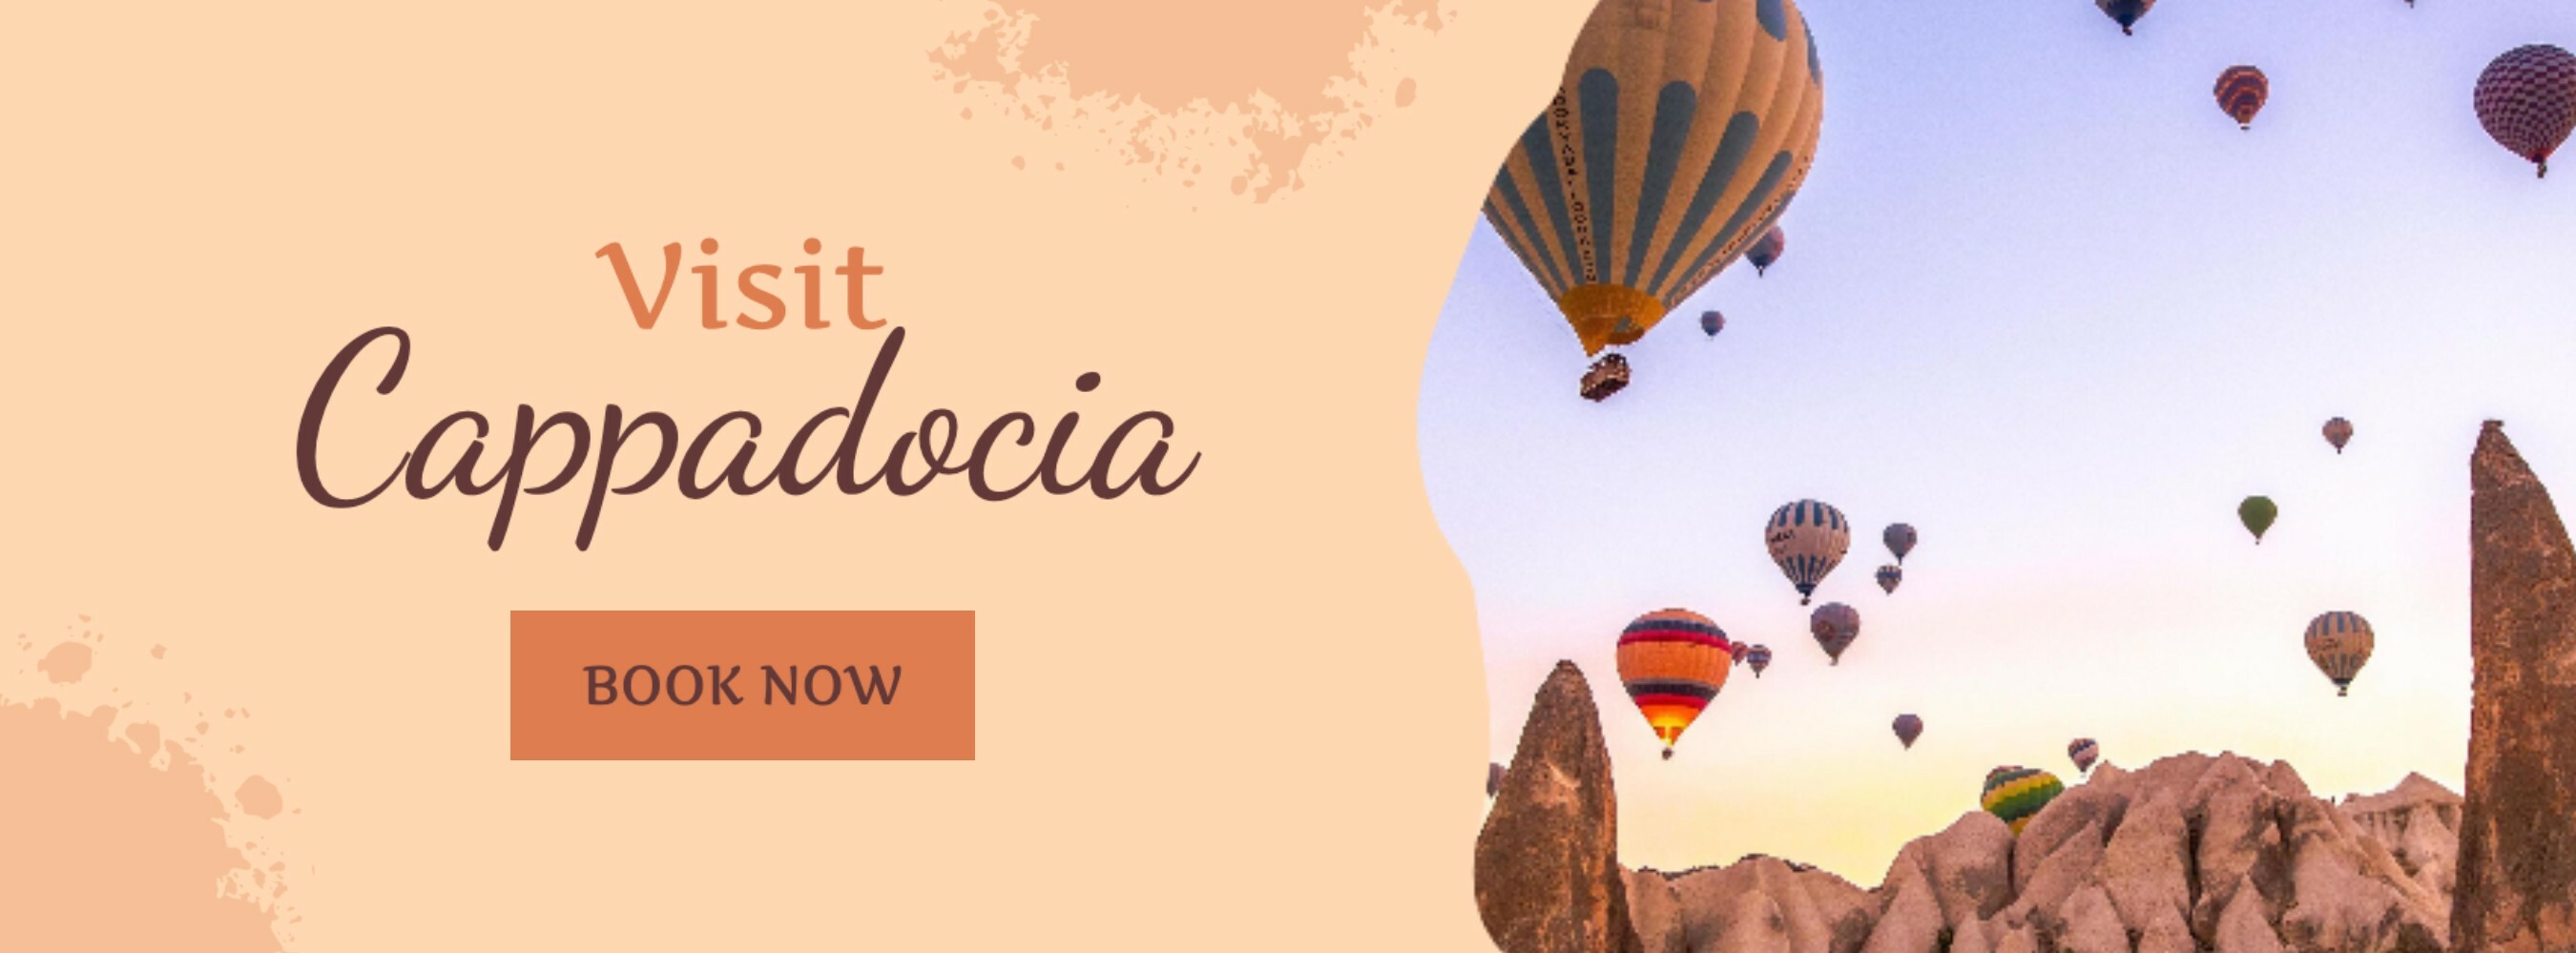 Beige Feminine Travel Visit Cappadocia Facebook Cover template